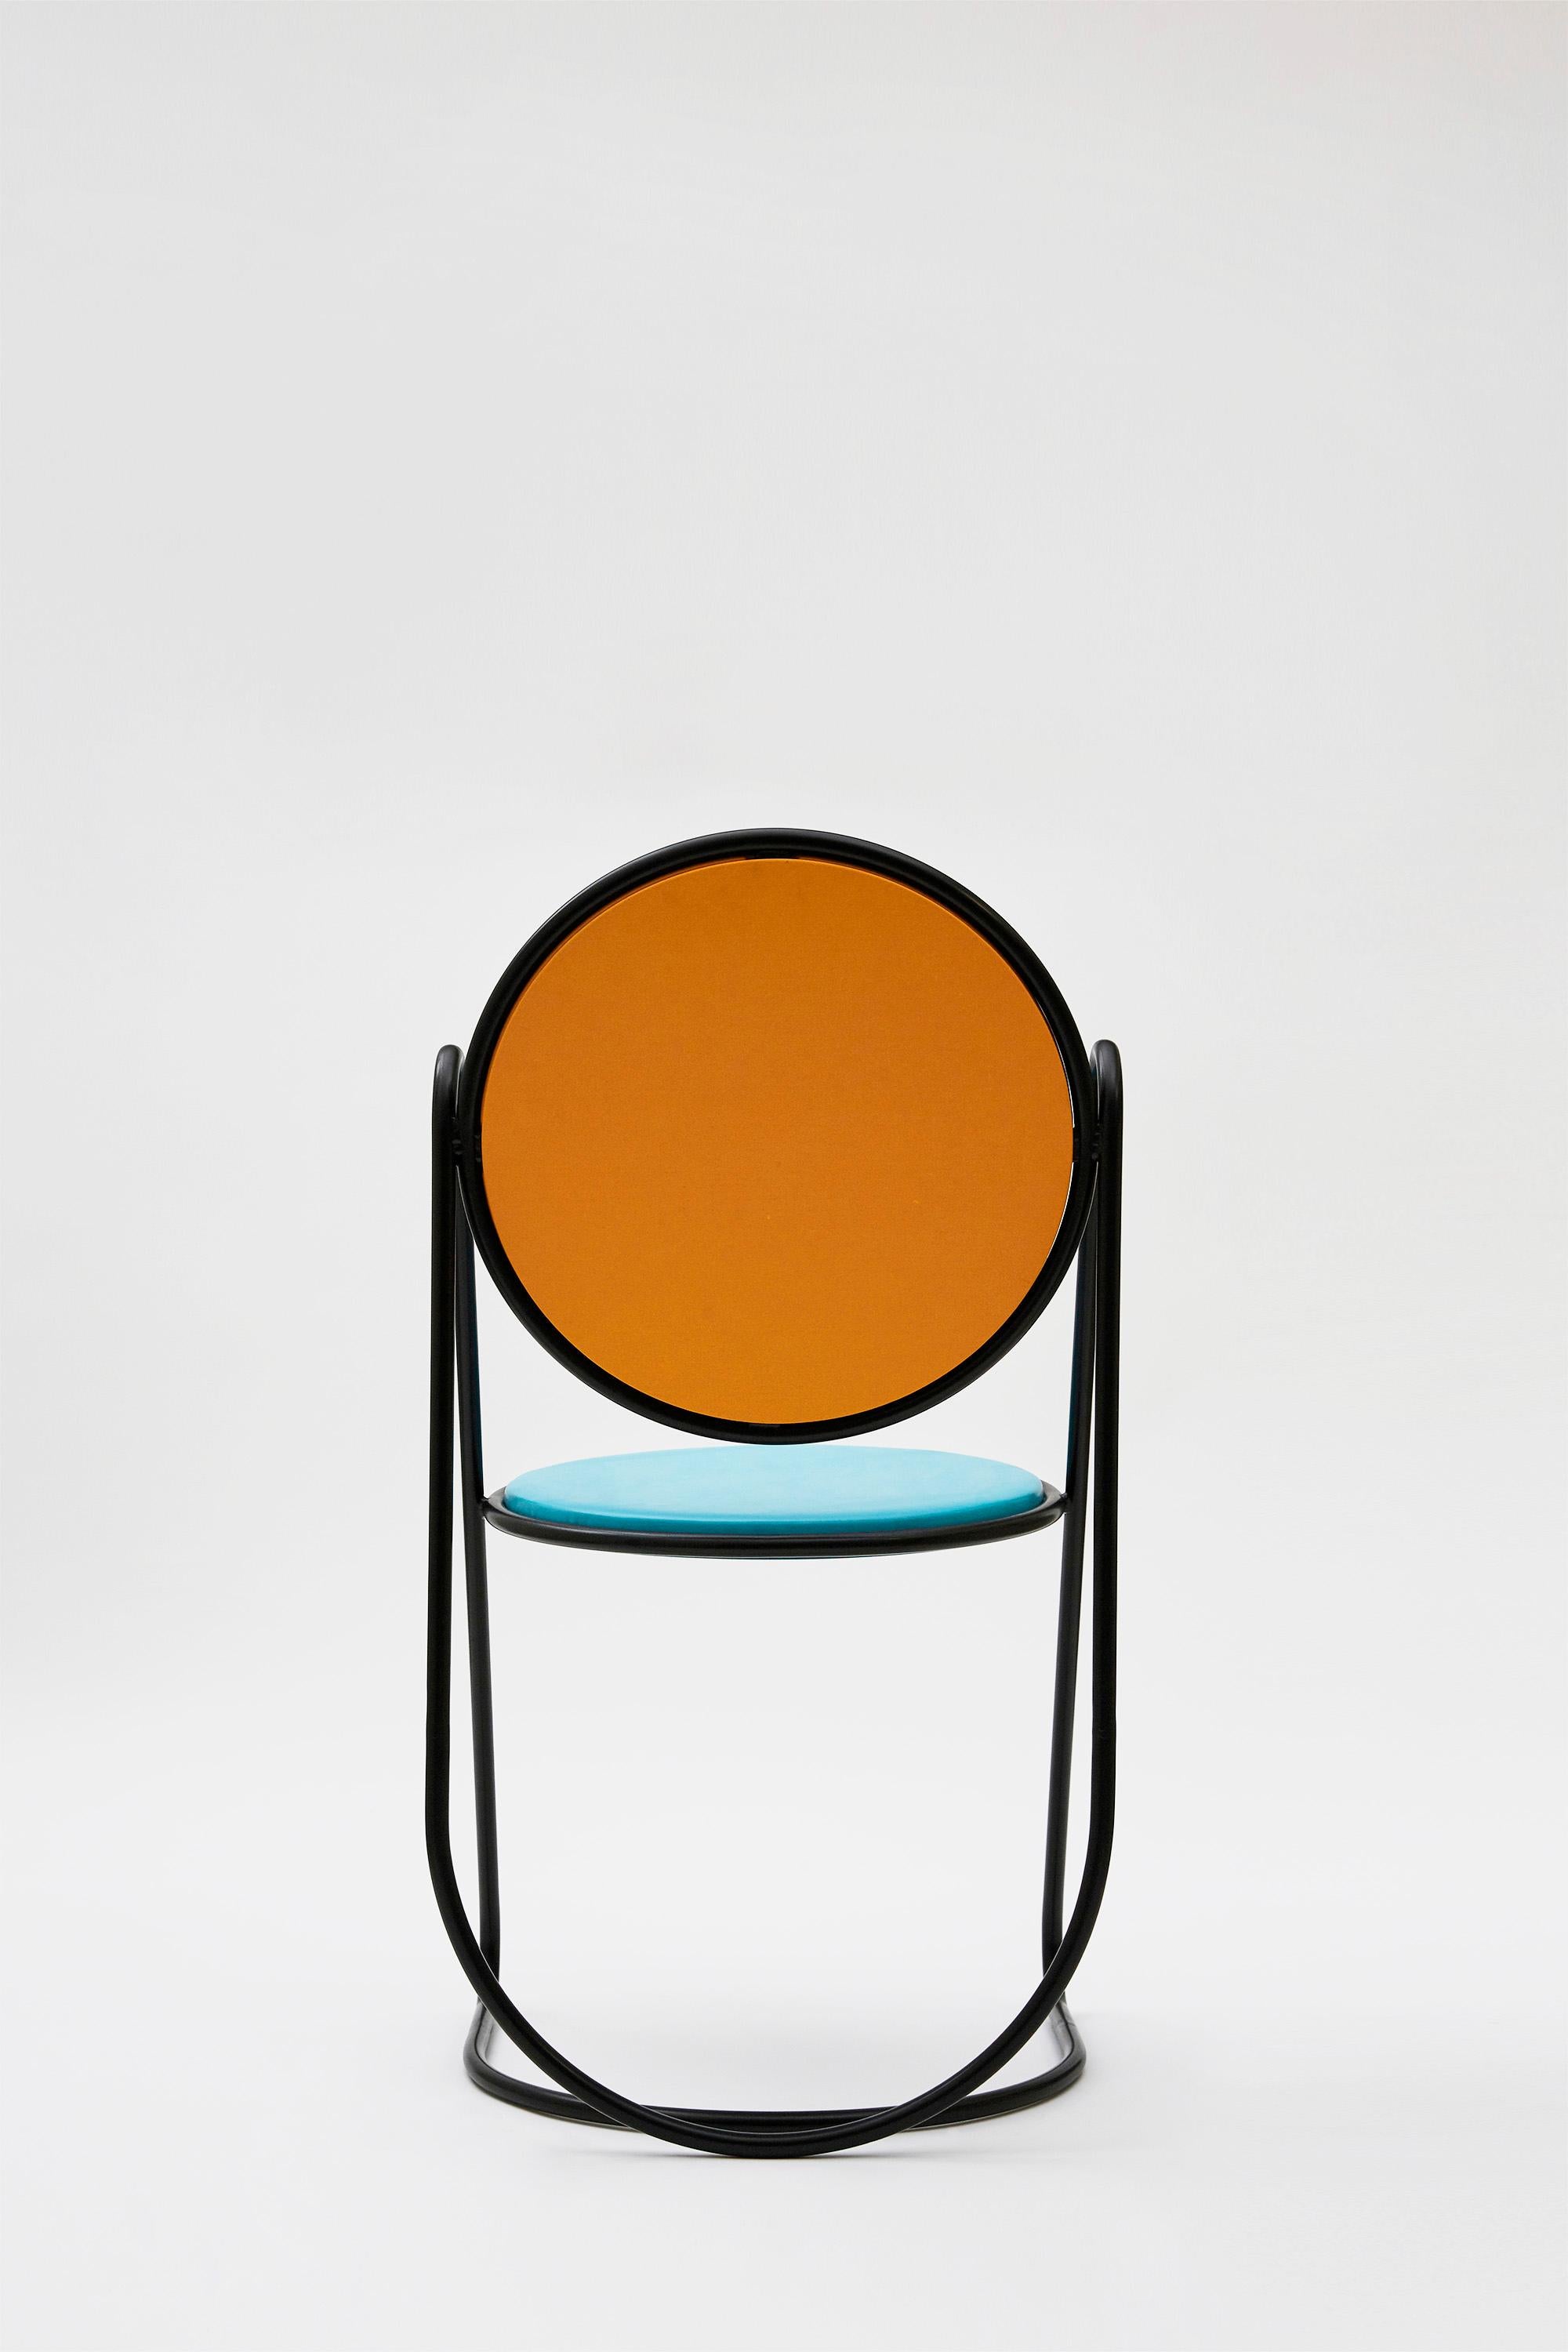 Powder-Coated U-Disk Chair, Black, Orange & Light Blue For Sale